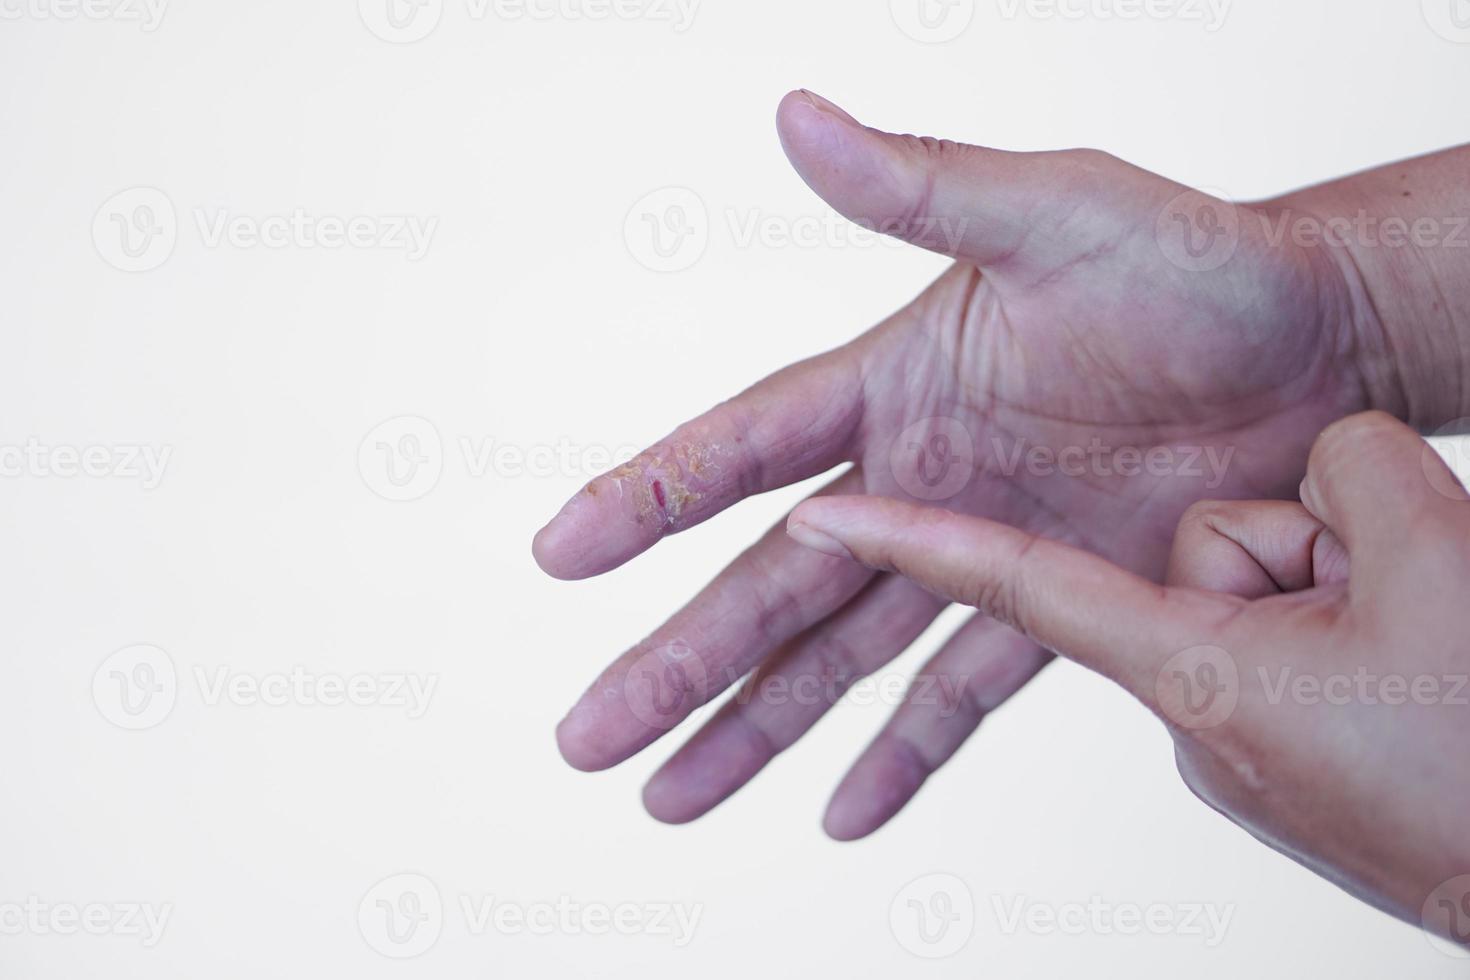 el dedo de primer plano apunta a la mano lesionada. concepto, manos malsanas, sequedad e infección, picazón, hongos, inflamación, alergia en la piel de la sustancia química. foto